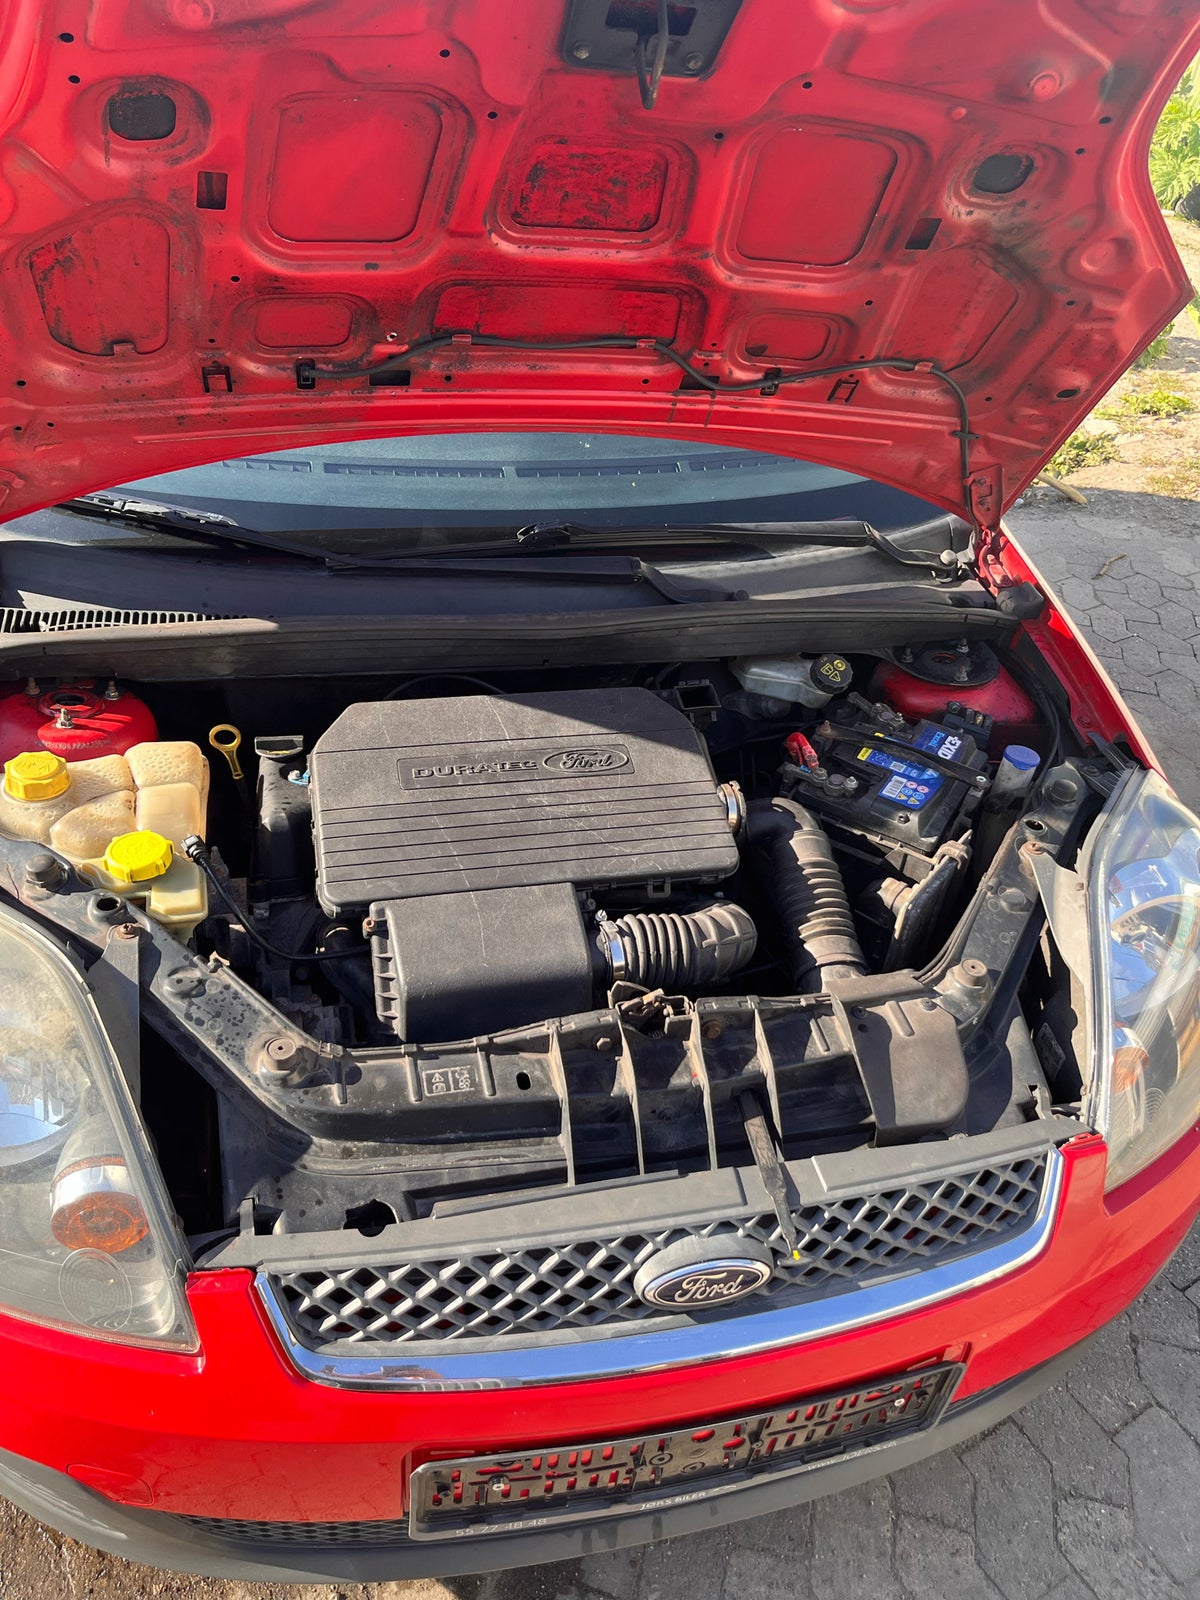 Ford Fiesta, 1,3 Ambiente, Benzin